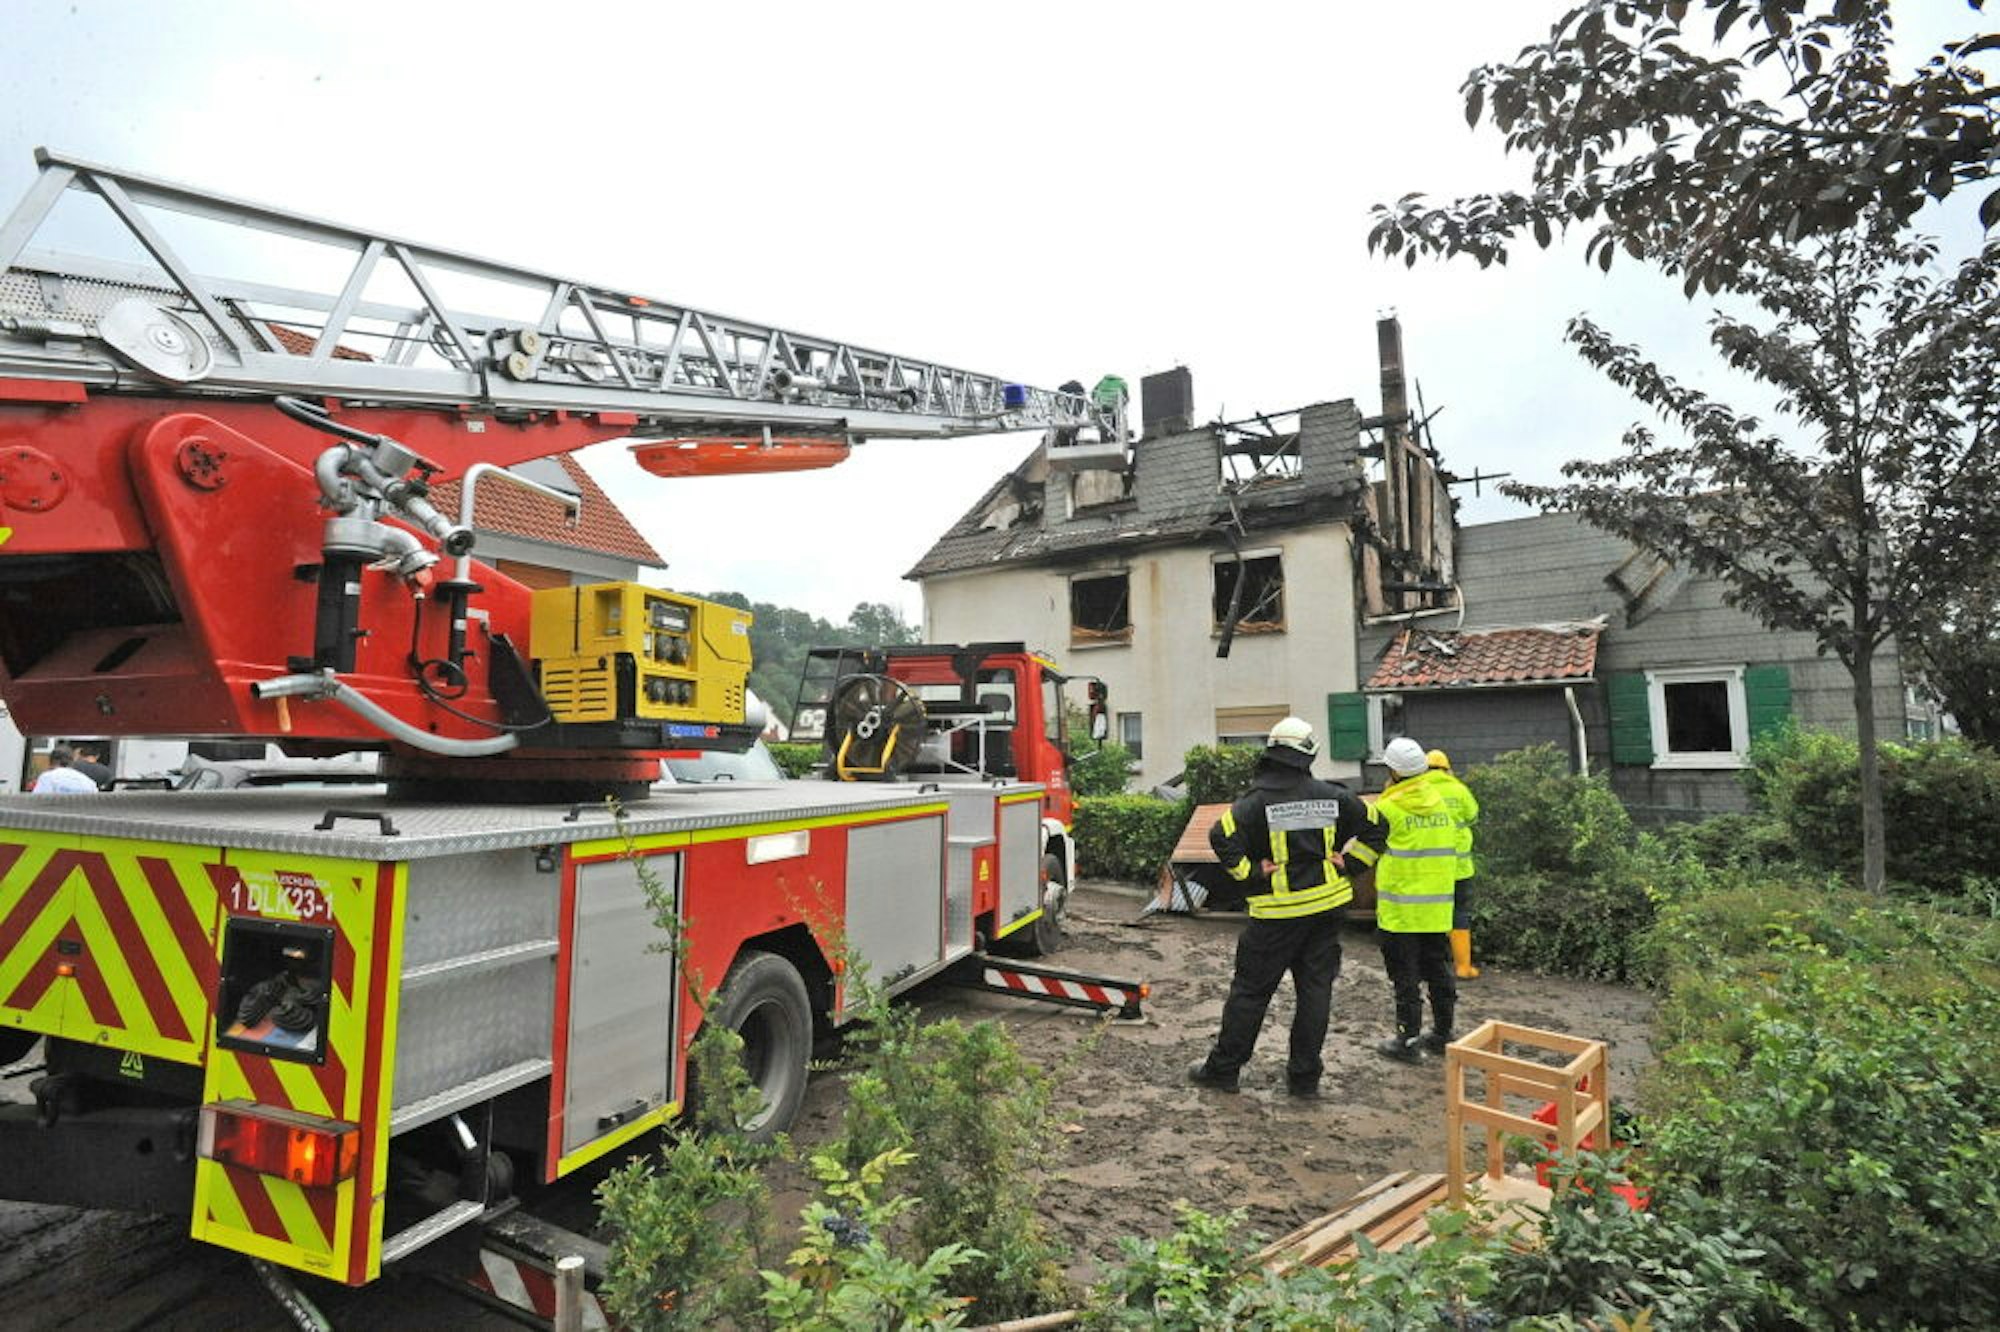 Feuerwehr und Polizei setzten am Freitag gemeinsam die Suche nach einem Bewohner des abgebrannten Hauses an der Neukirchener Straße fort.